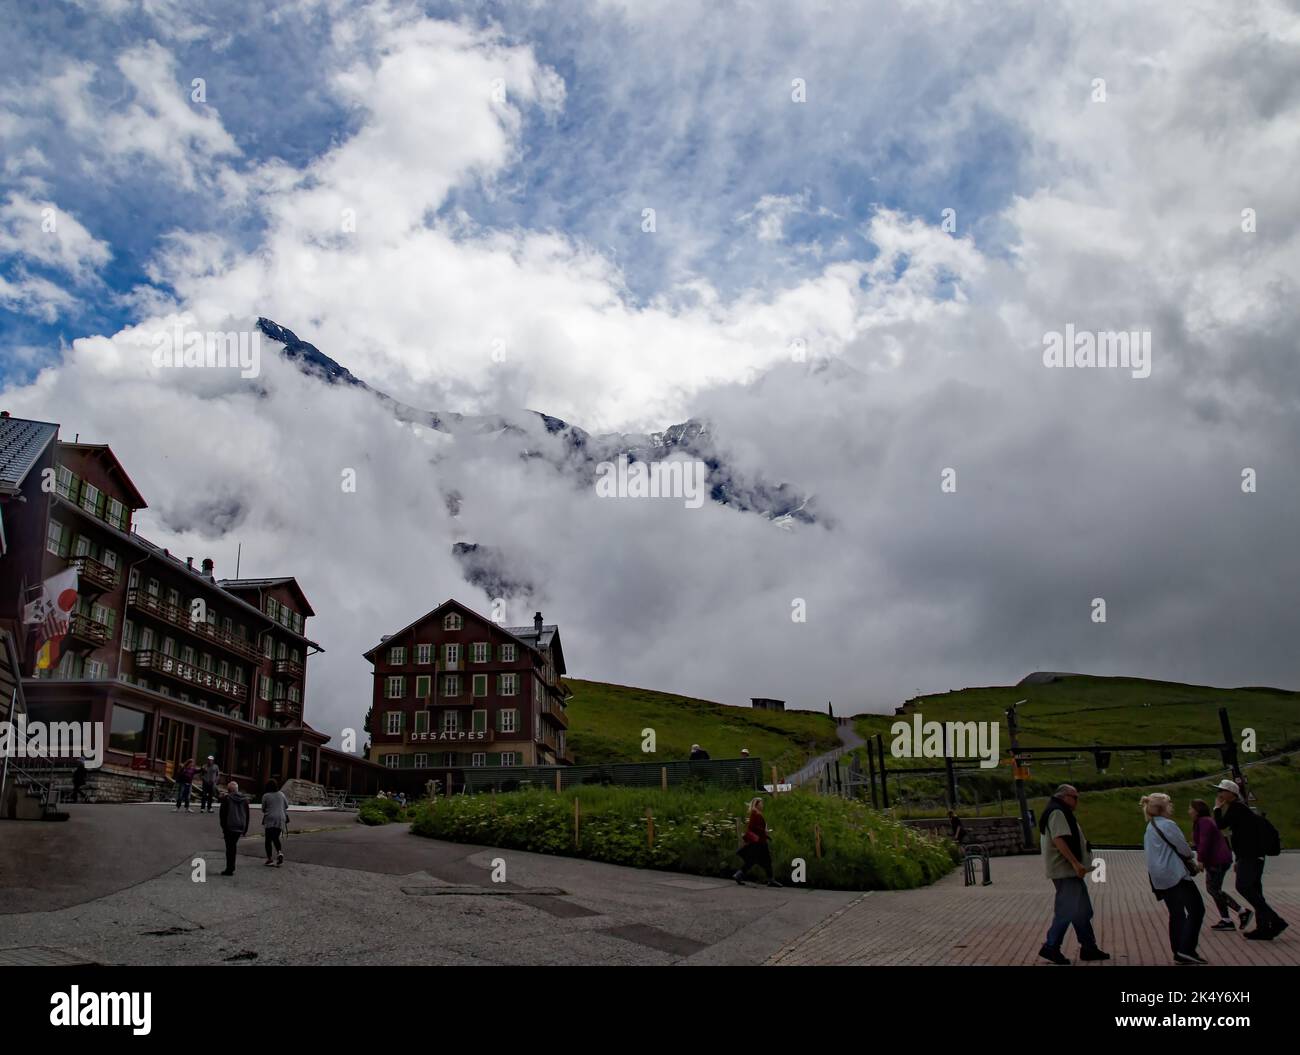 Con Jungfraujoch sullo sfondo tra le nuvole, la città di Kleine Scheidegg è una fermata del treno per i visitatori con un hotel e negozi. Foto Stock